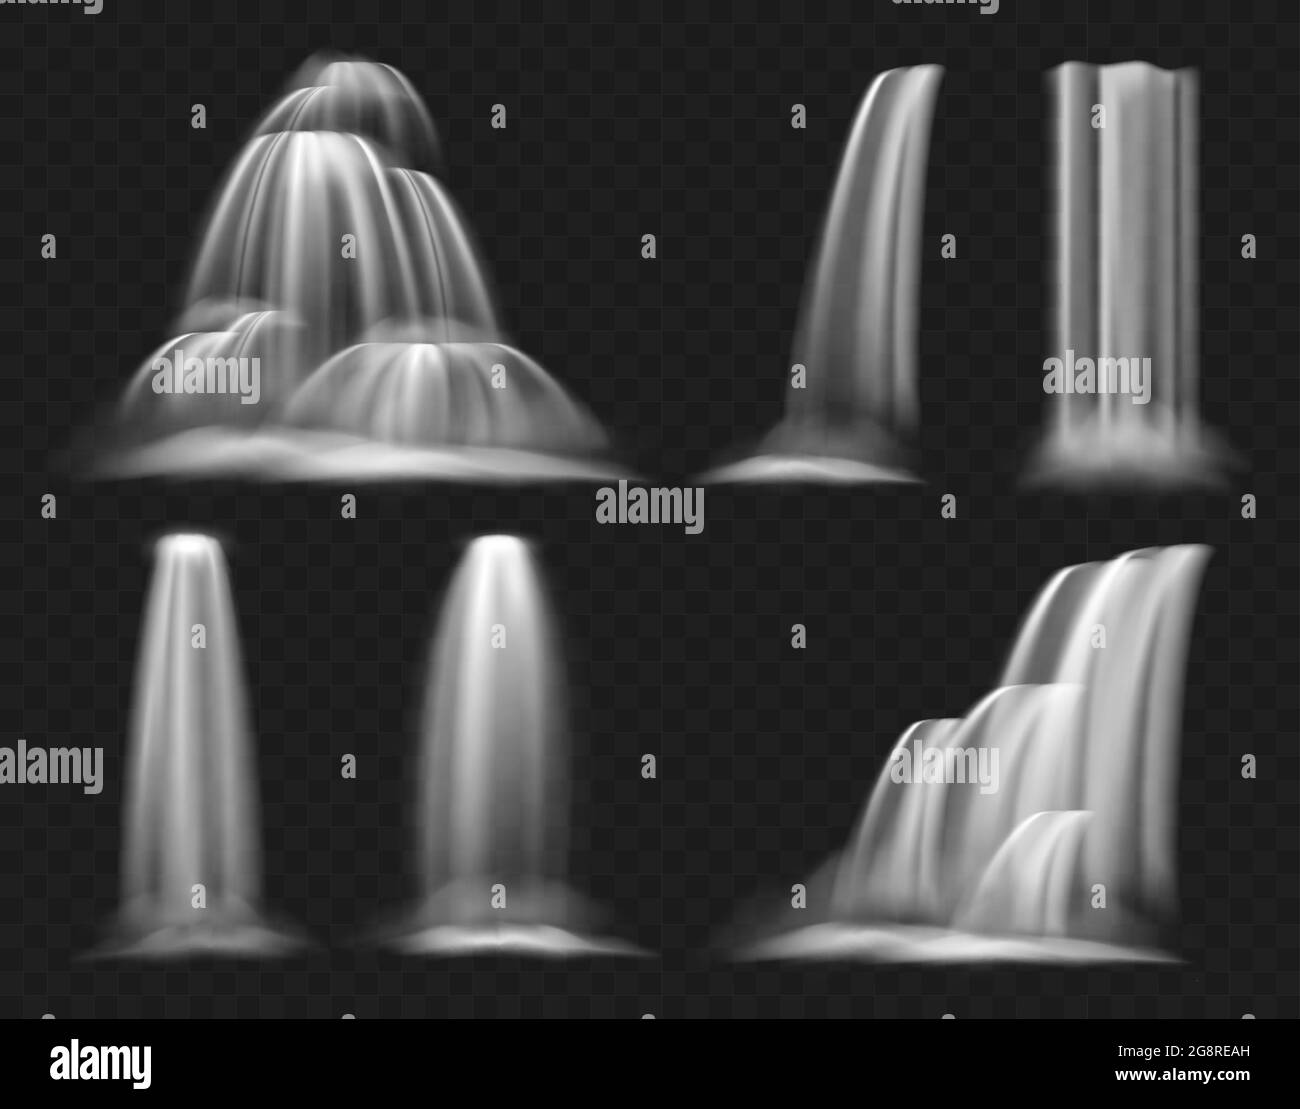 Realistisches Wasserfall Vektor-Illustration-Set, klares Wasser Strom von Wasserfall, Geysir oder Brunnen fallen, fließt und Kaskadierung mit Spritzern Stock Vektor